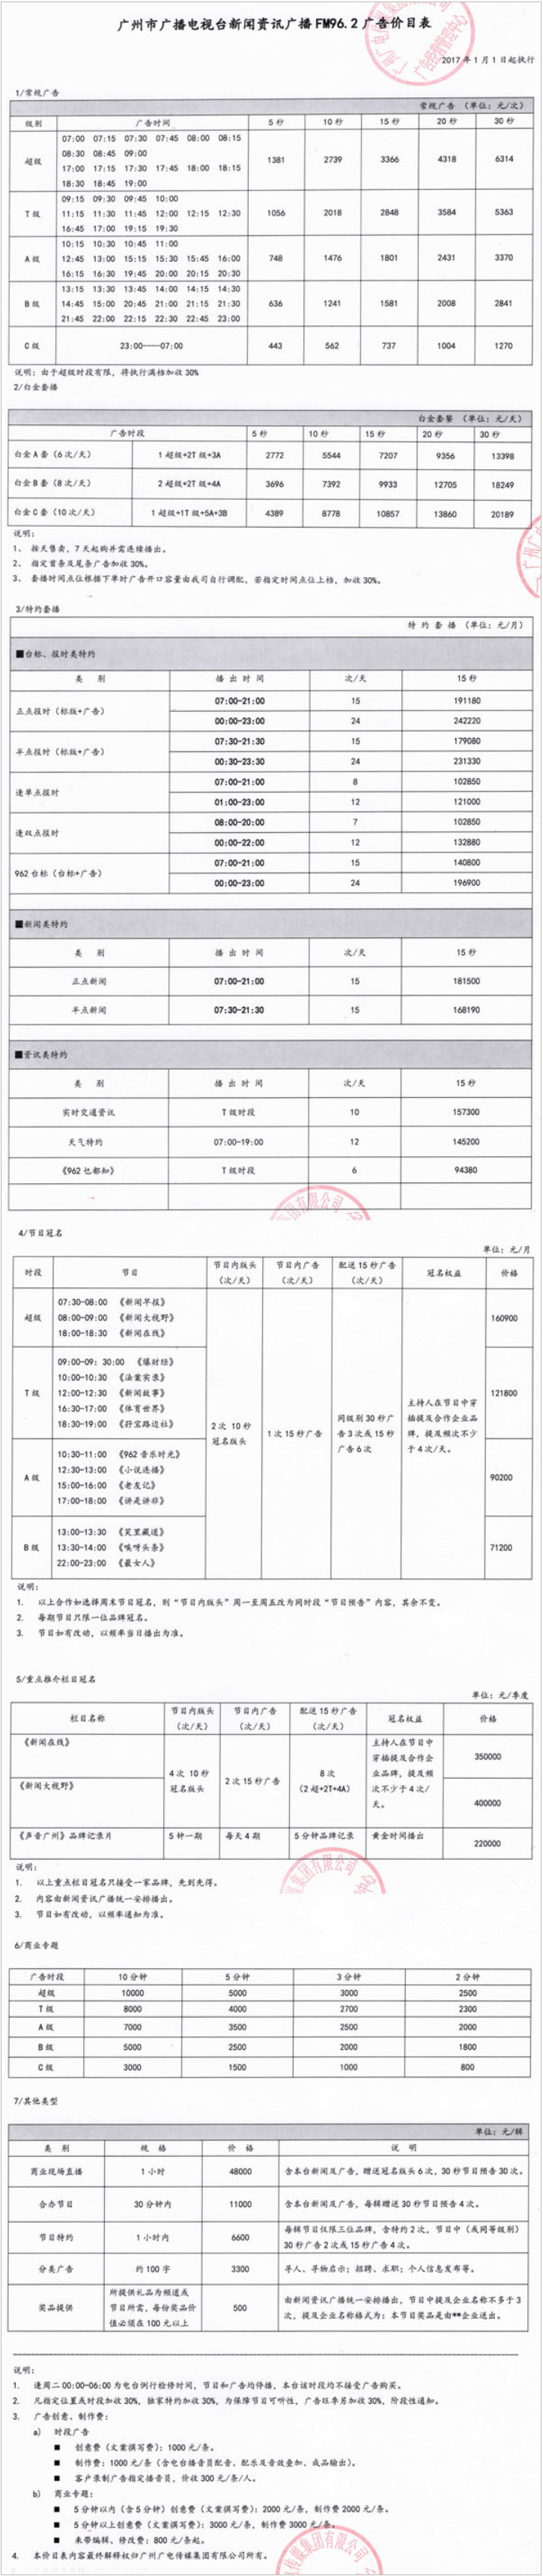 2017广州人民广播电台新闻资讯广播FM96.2广告报价表.png